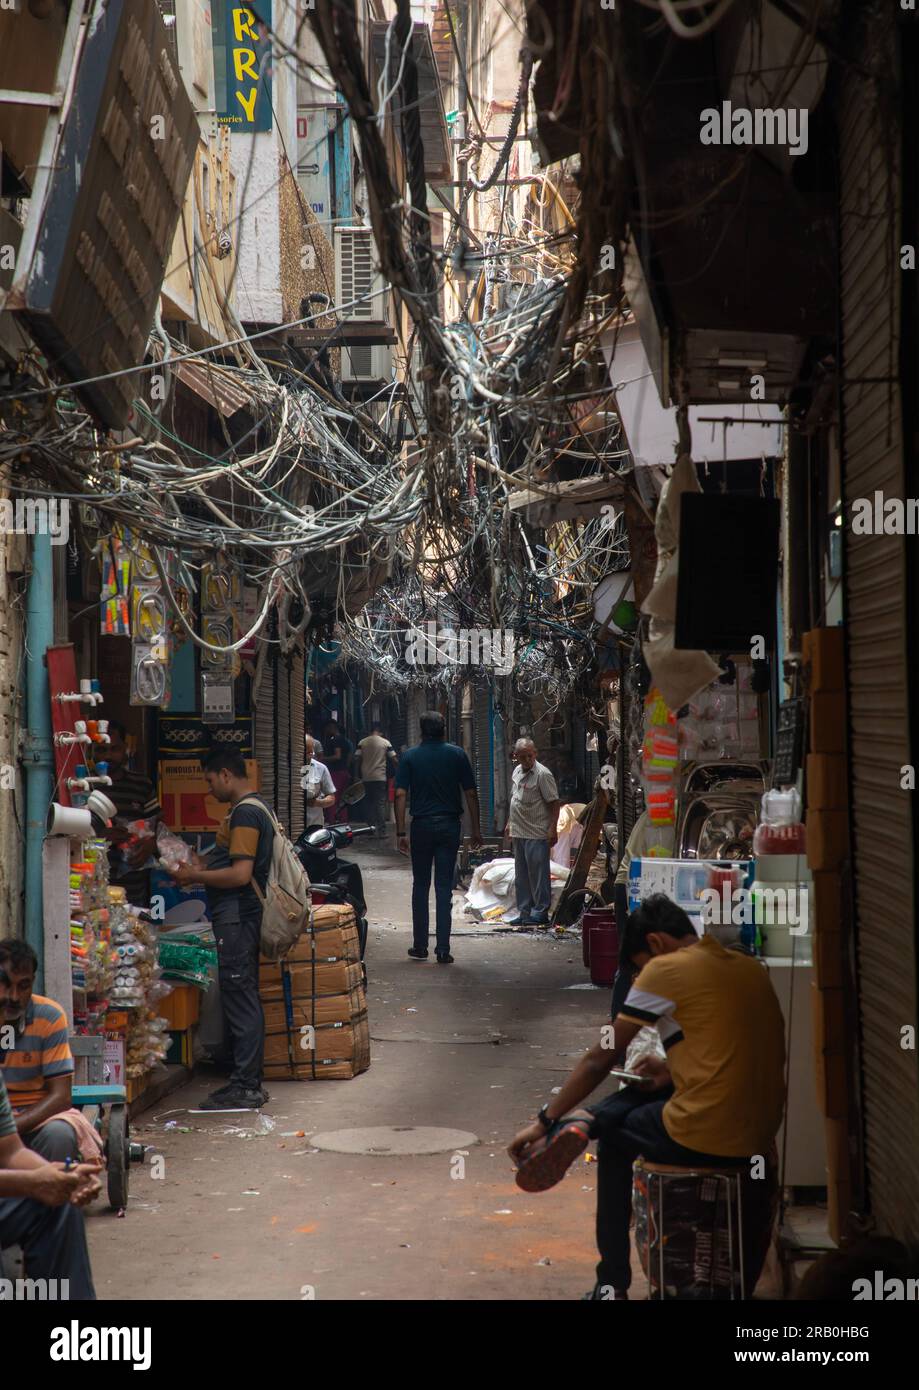 Tangled power lines in the street in old Delhi, Delhi, New Delhi, India Stock Photo